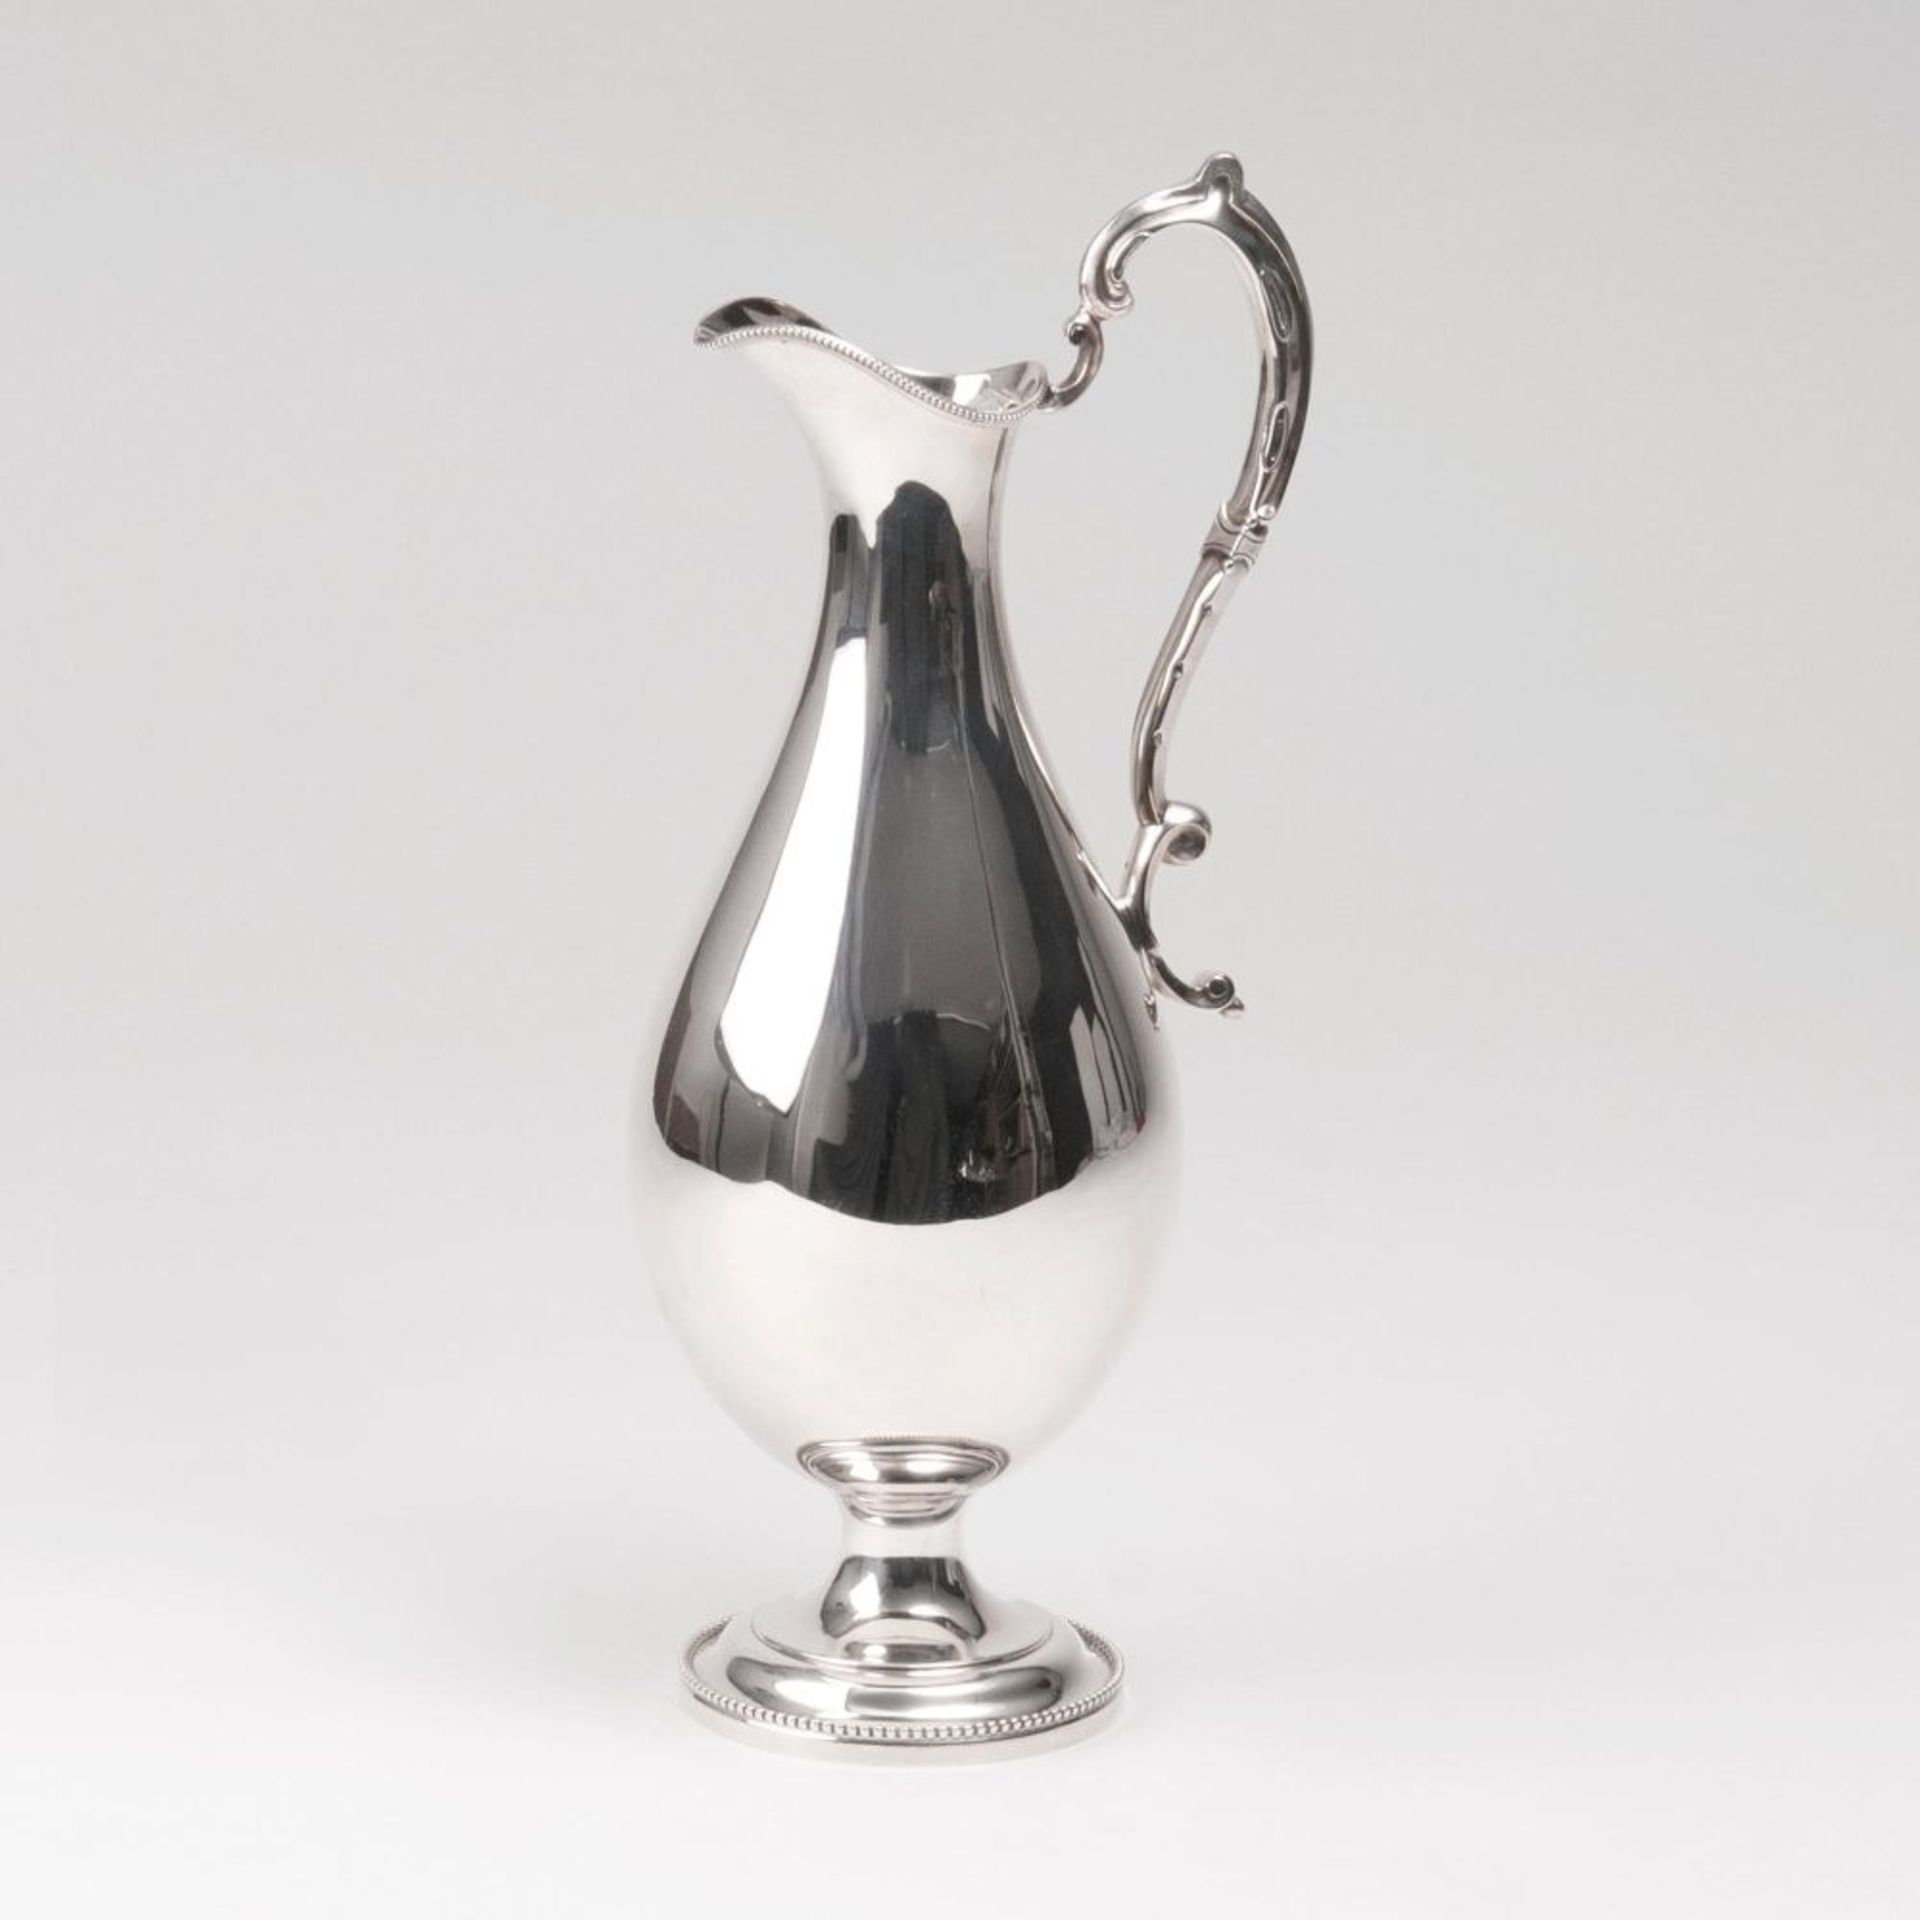 Viktorianische WasserkanneBirmingham, 1868-69. Silber, gest., BZ, MZ.: 'E&Co', registriert 1850.